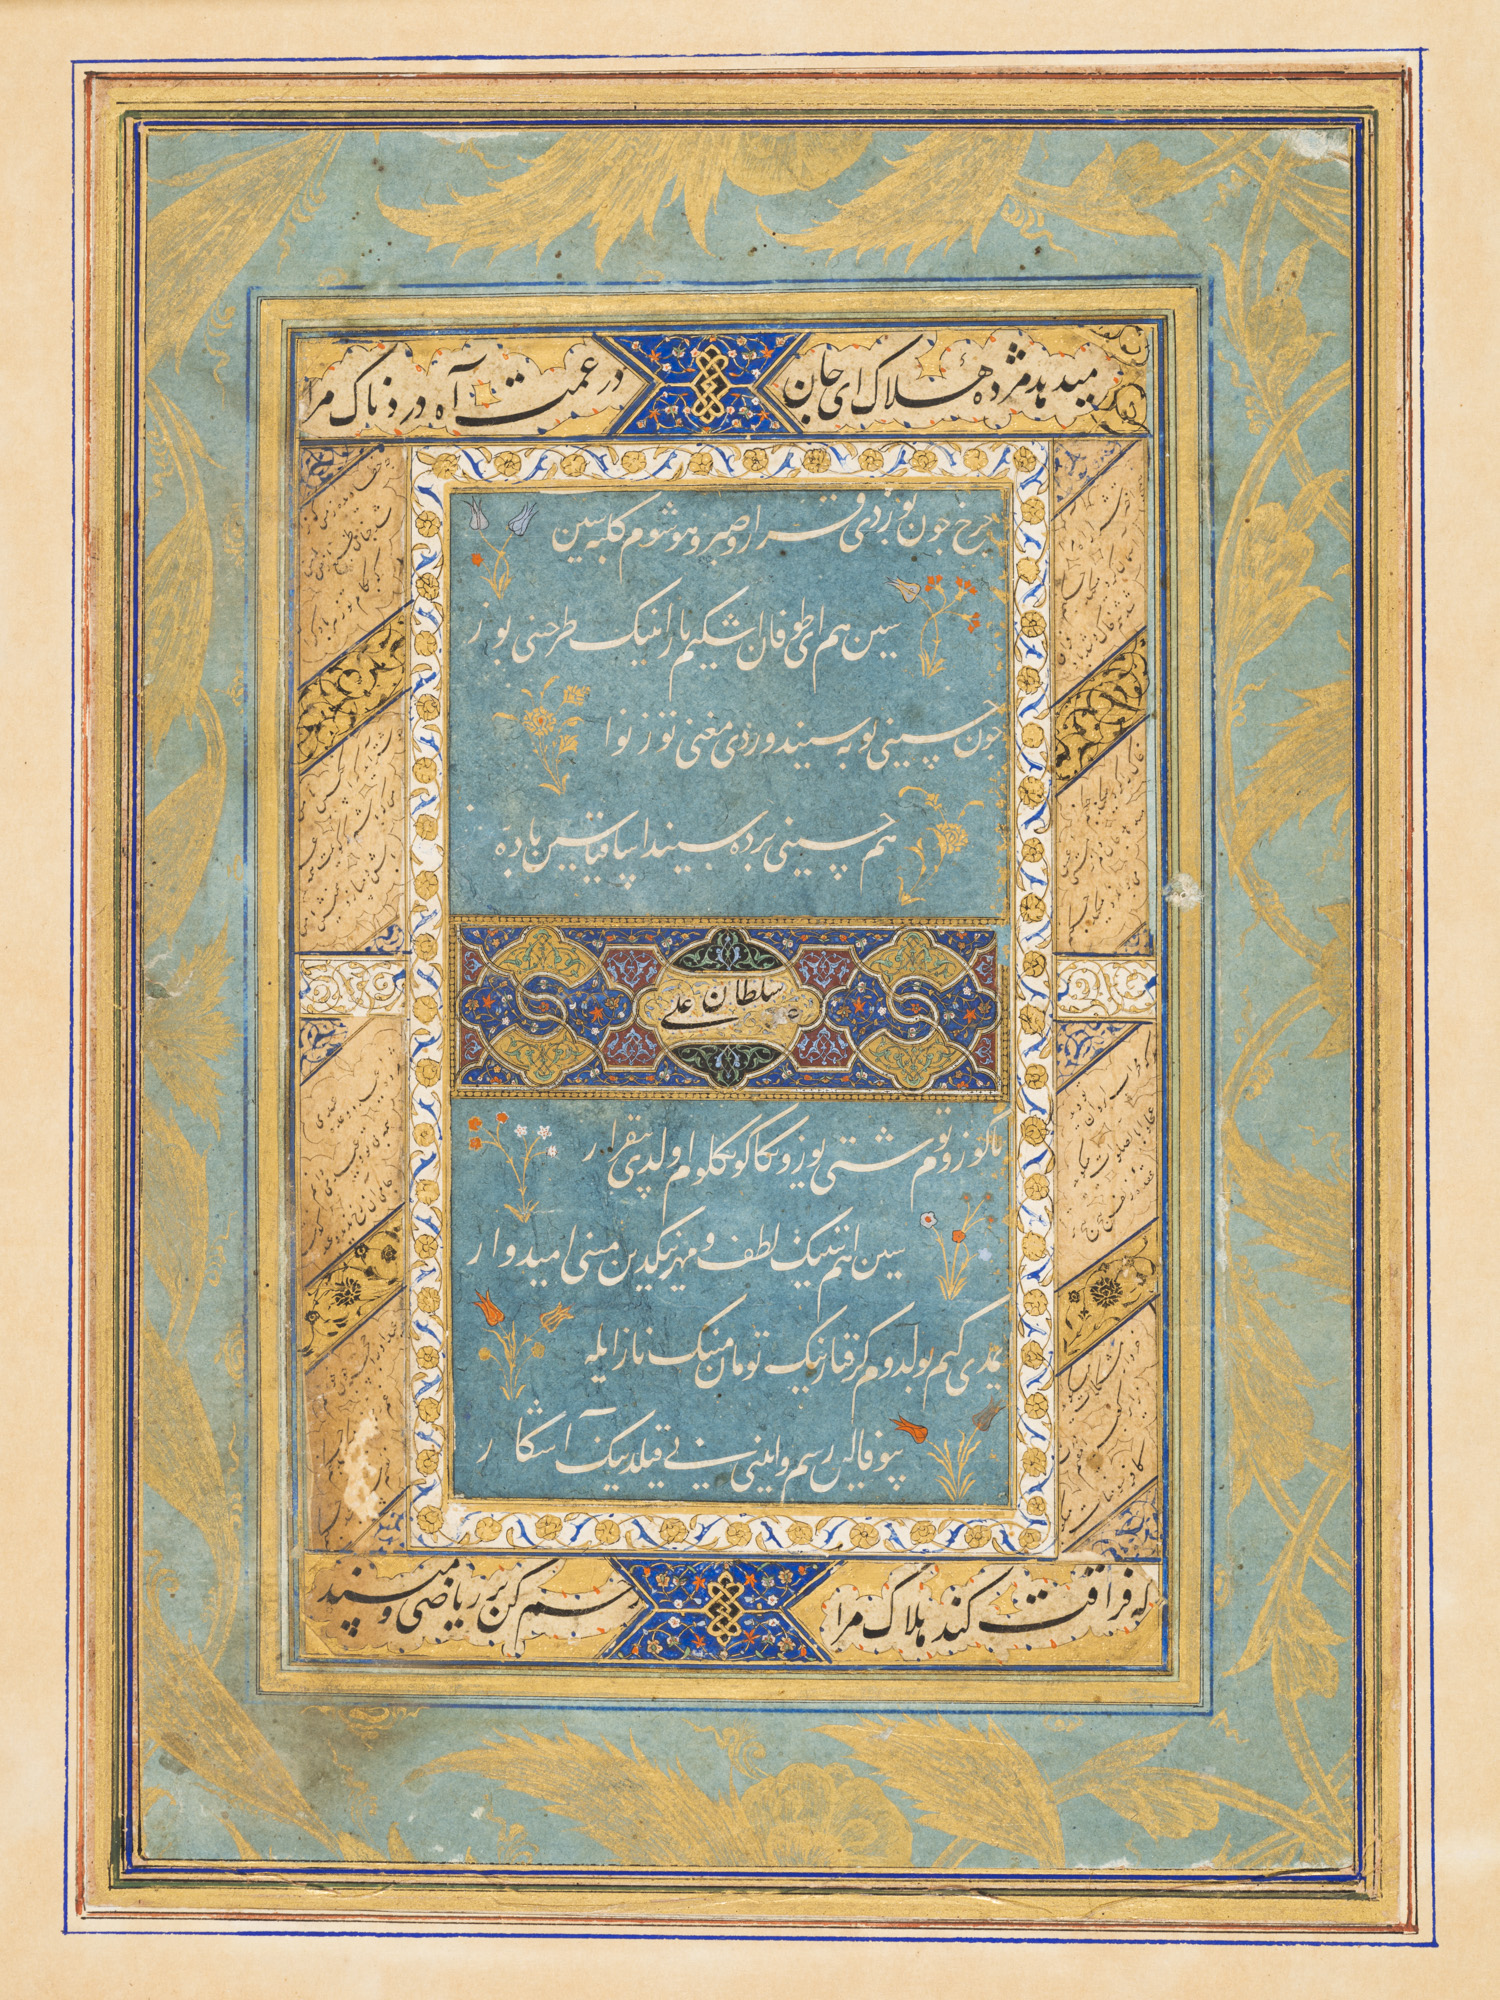 予期できない愛の状況で引き起こされる悲嘆と苦悩を綴った一枚：スルタン・フサイン・ミールザー・バイカラの詩歌集（一冊）のとあるページ by Sultan Ali Mashhadi - 1490年頃 （ティムール時代） - 15 5/16 in x 11 1/16 in 